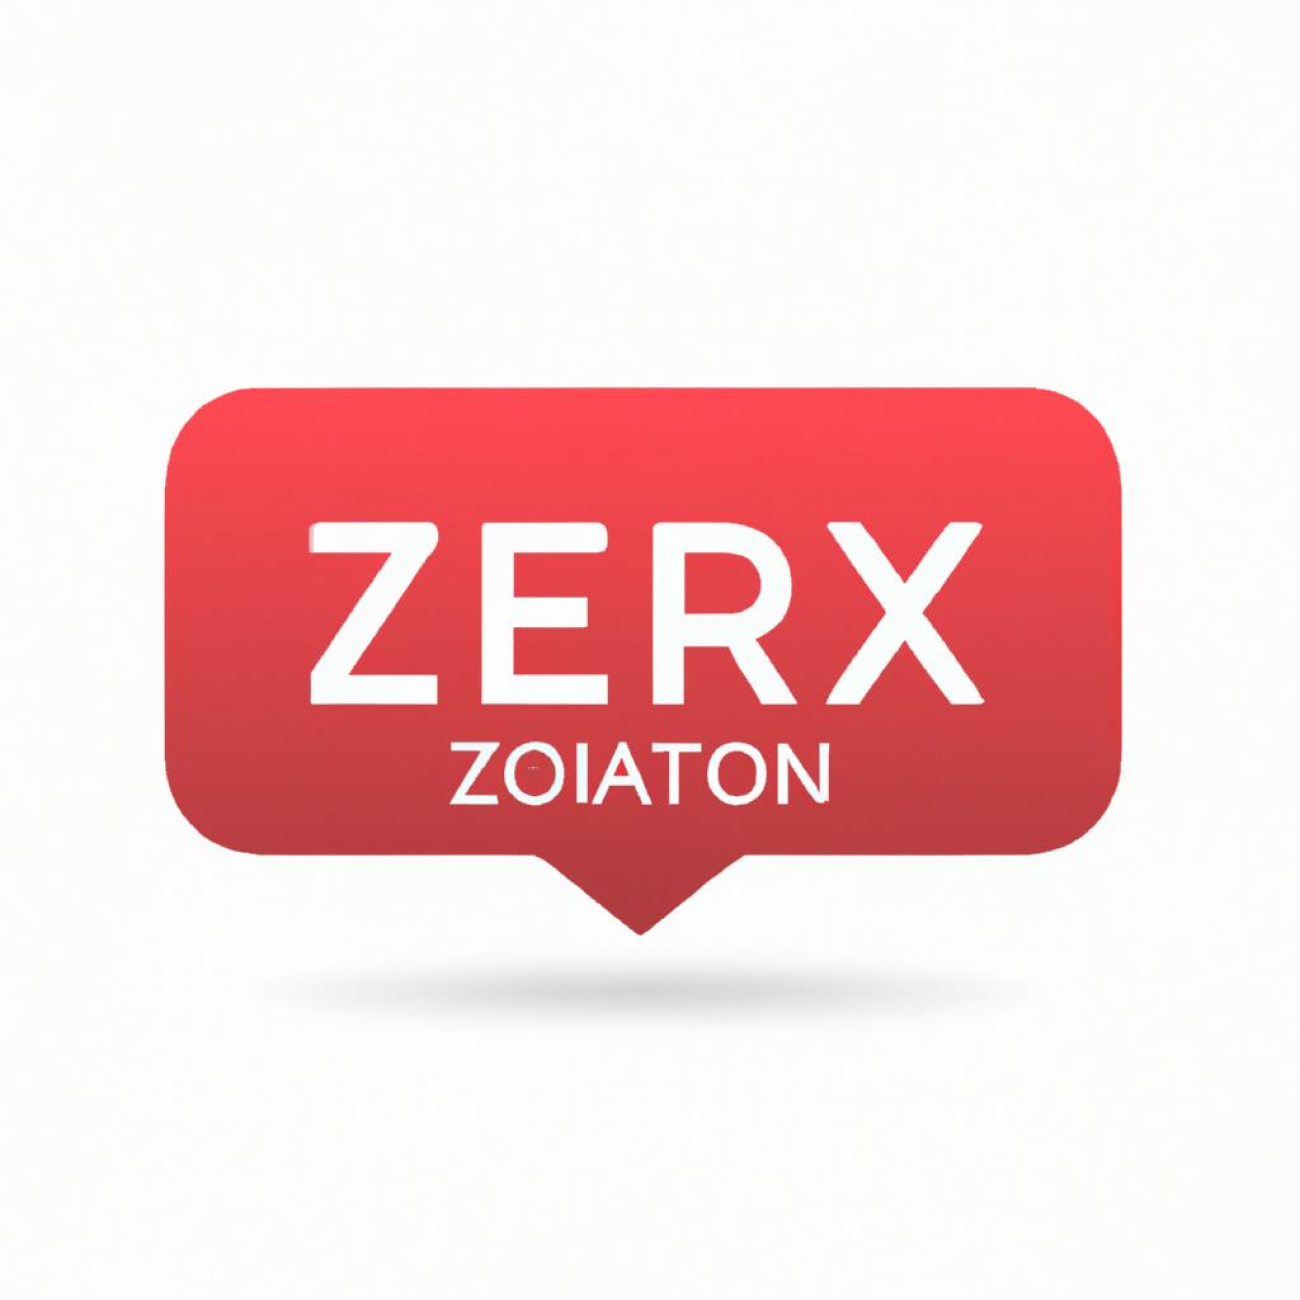 Zkušenosti uživatelů s používáním Zerexu